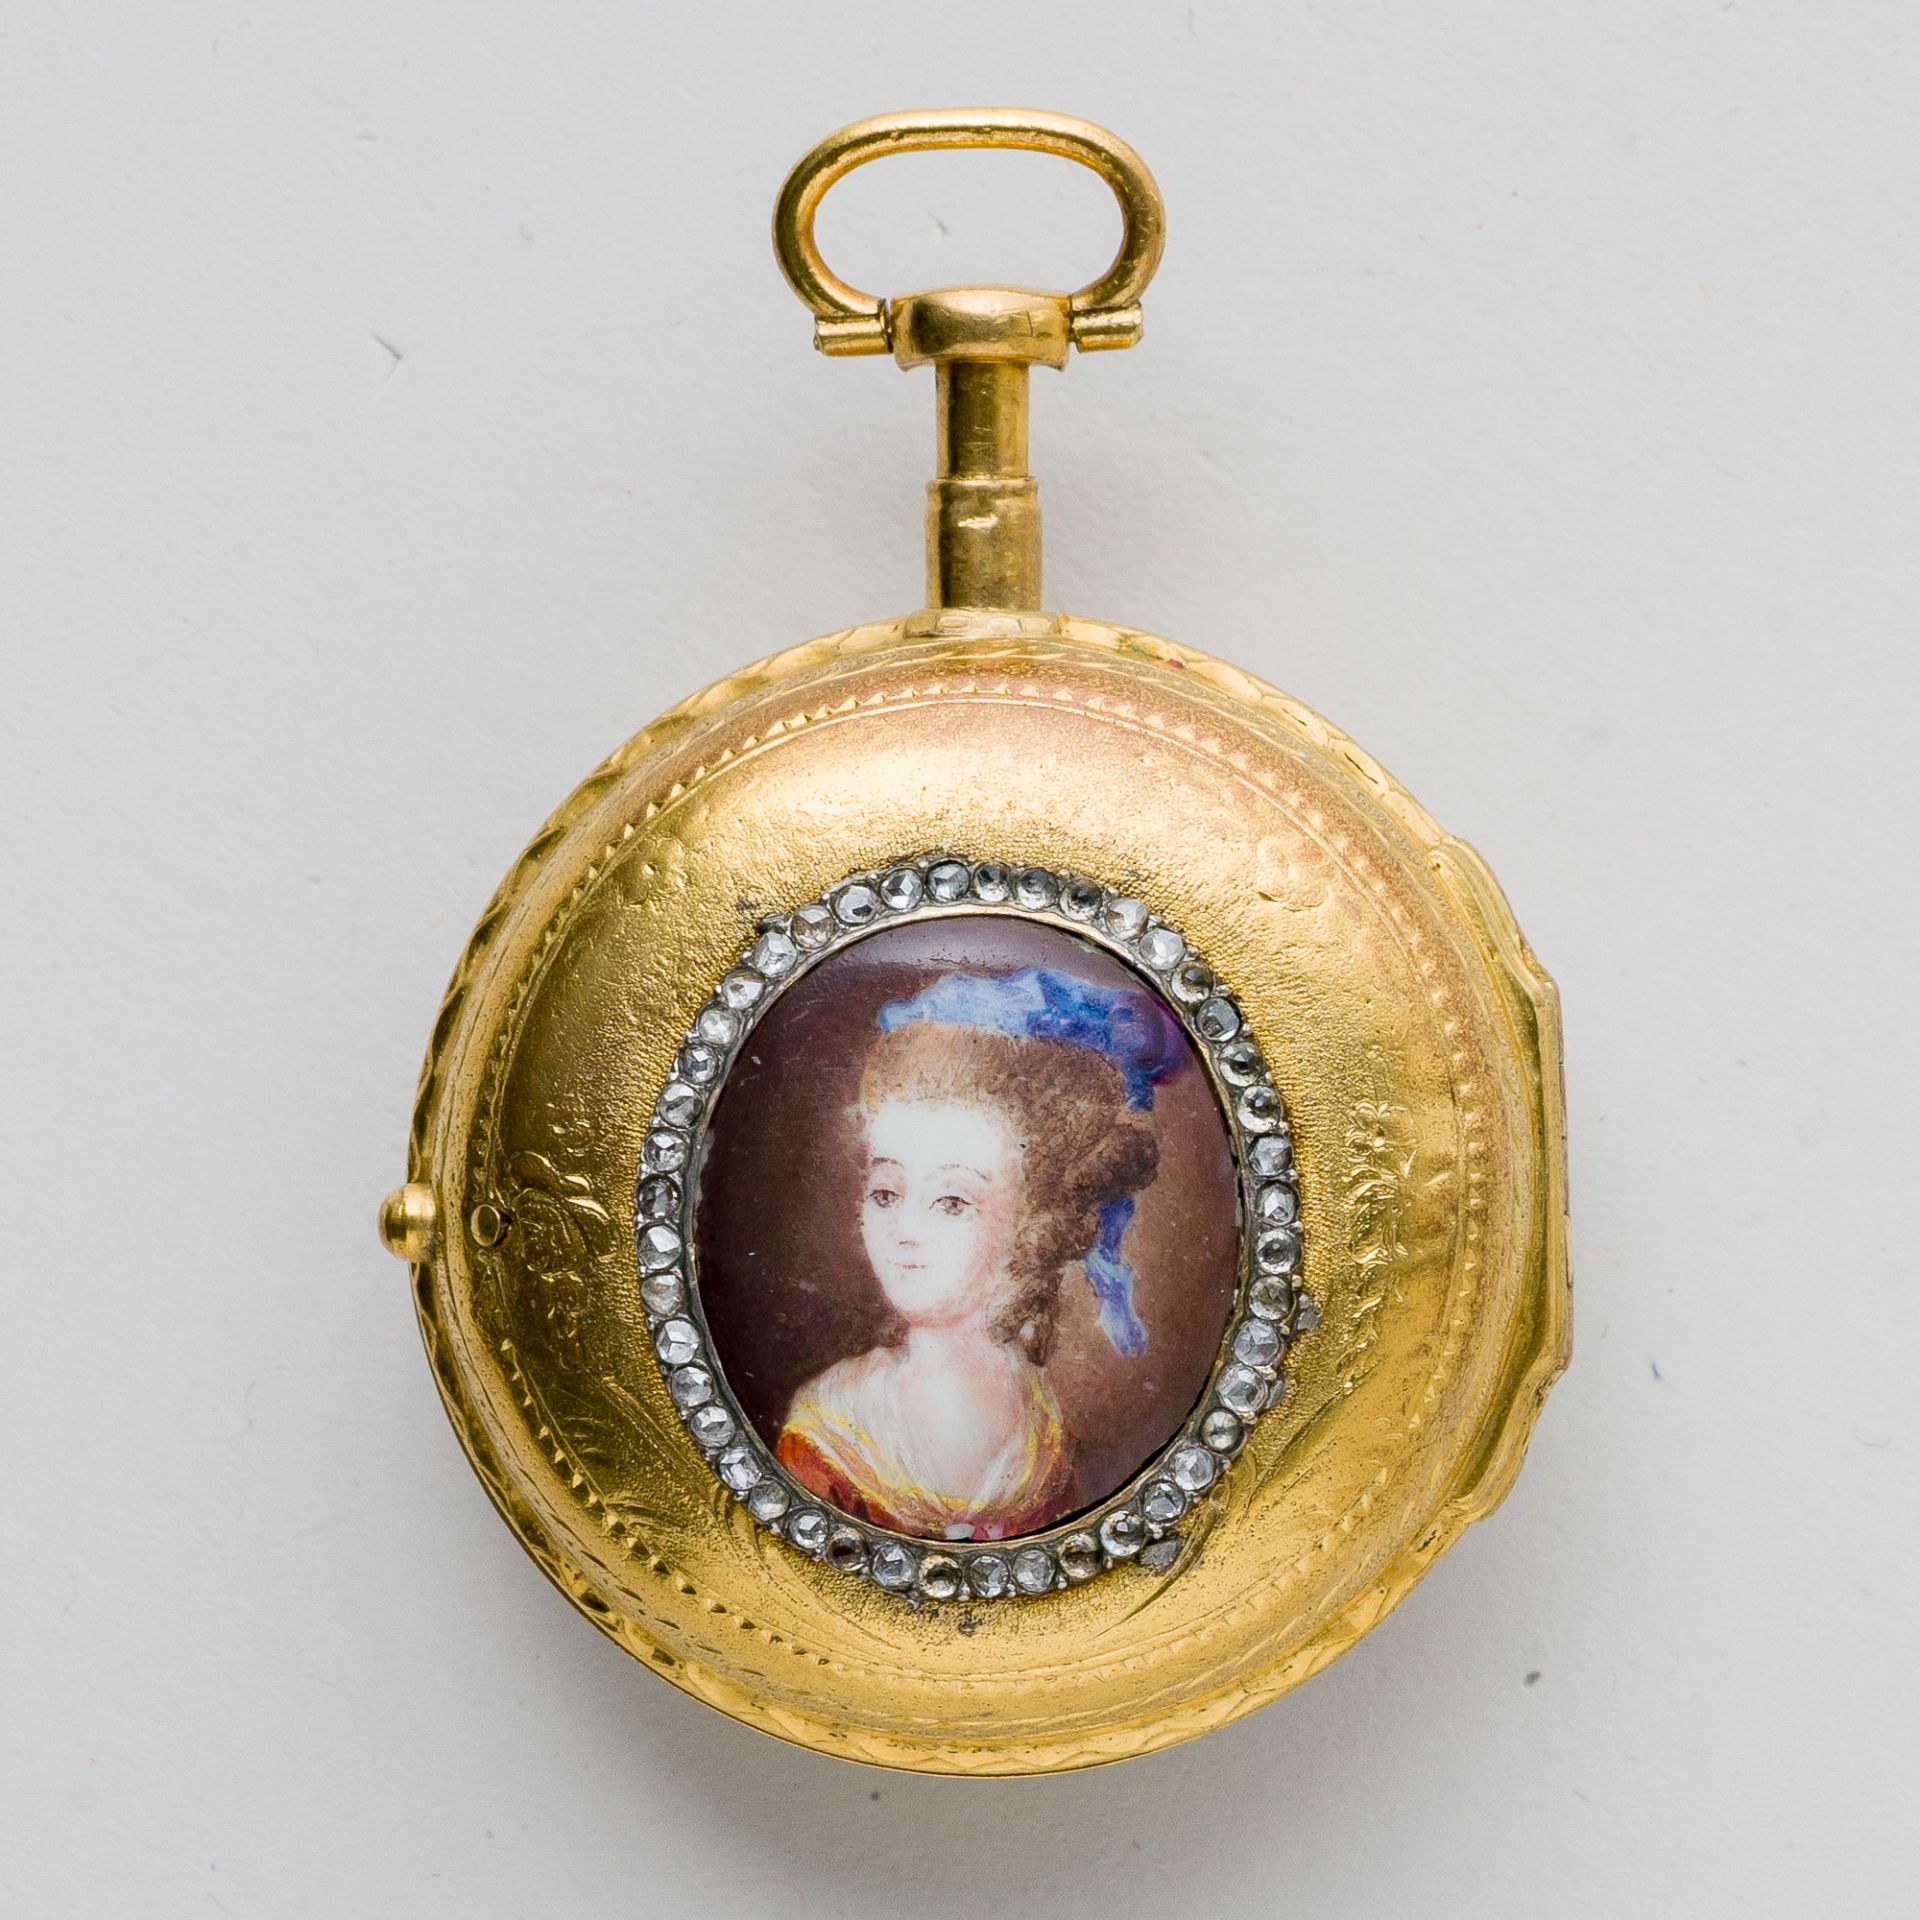 Bordier a Genève Spindeluhr Gold mit Diamantbesatz und Medaillon, 18. Jhd. - Image 2 of 8